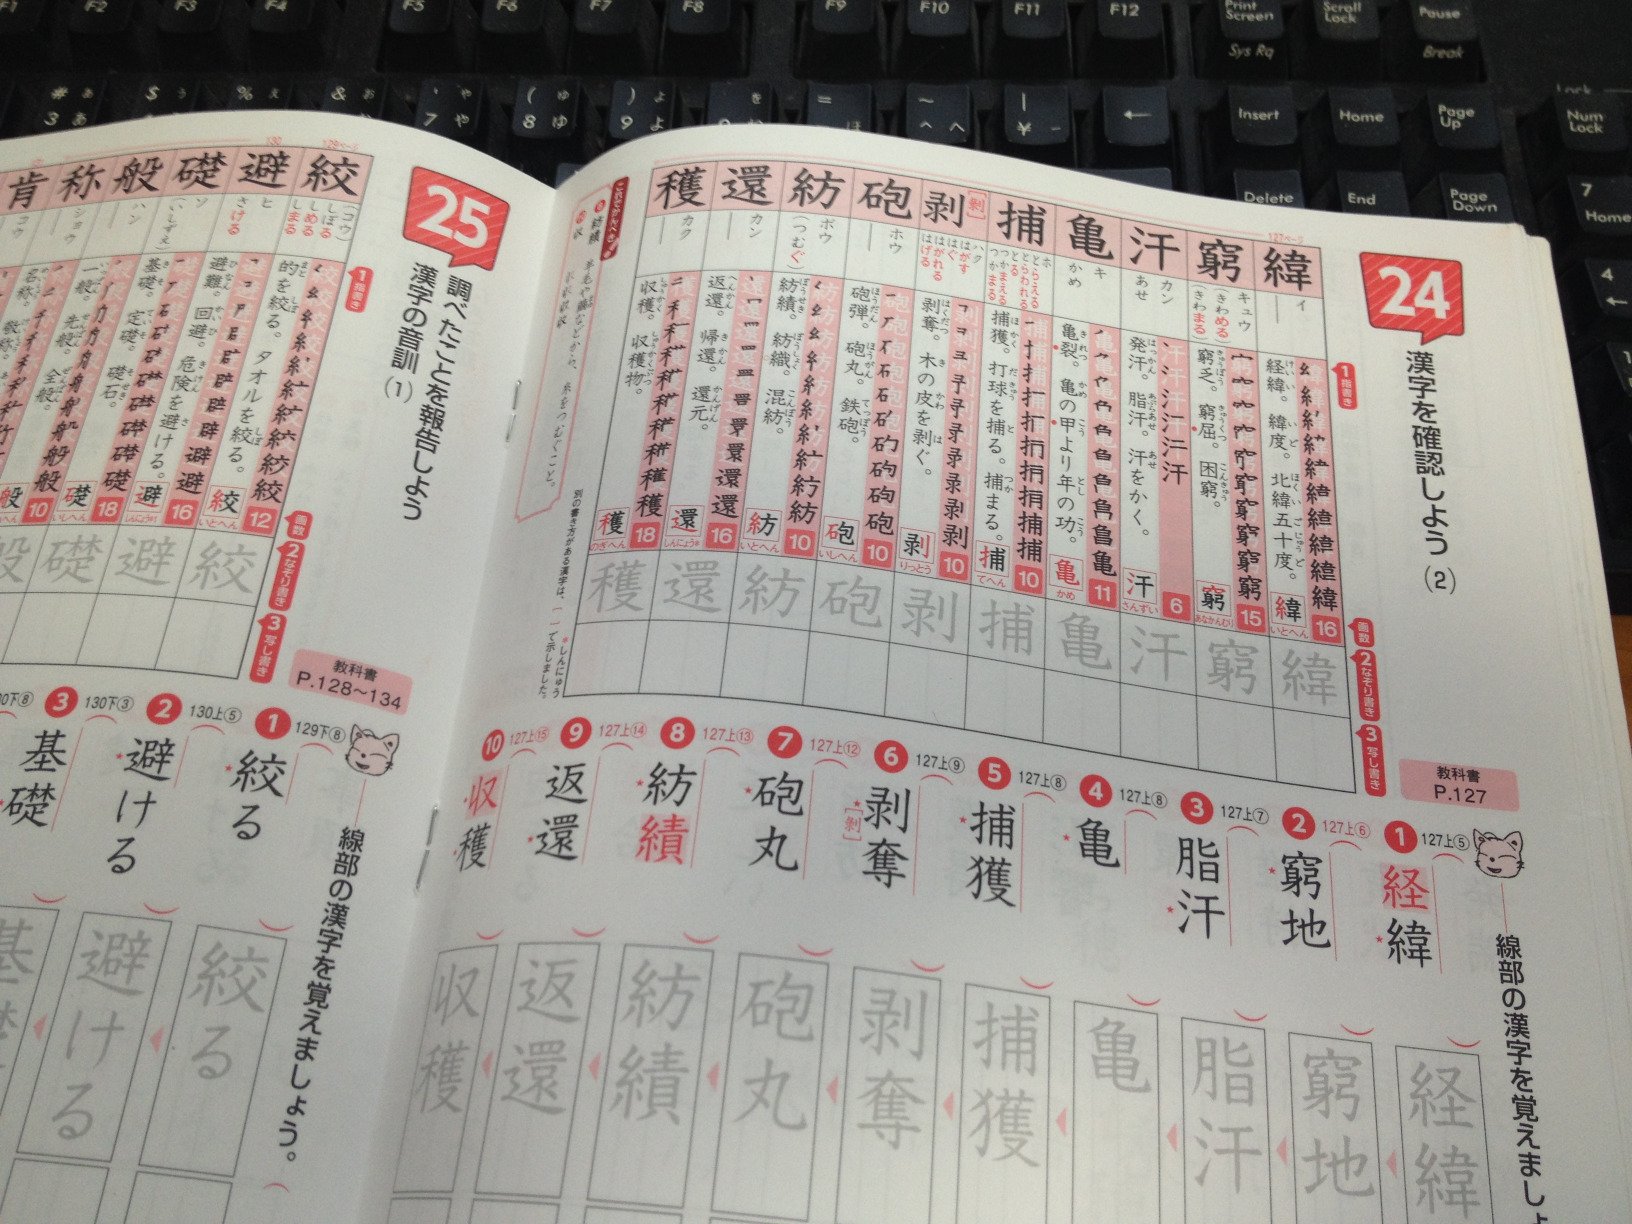 Tomoaki Masuda Pa Twitter 中１の あかねこ漢字スキル はこんな感じ 昔ながらの漢字ドリルで 書き順が載っている 中学生なので ミニ定規はセットではない